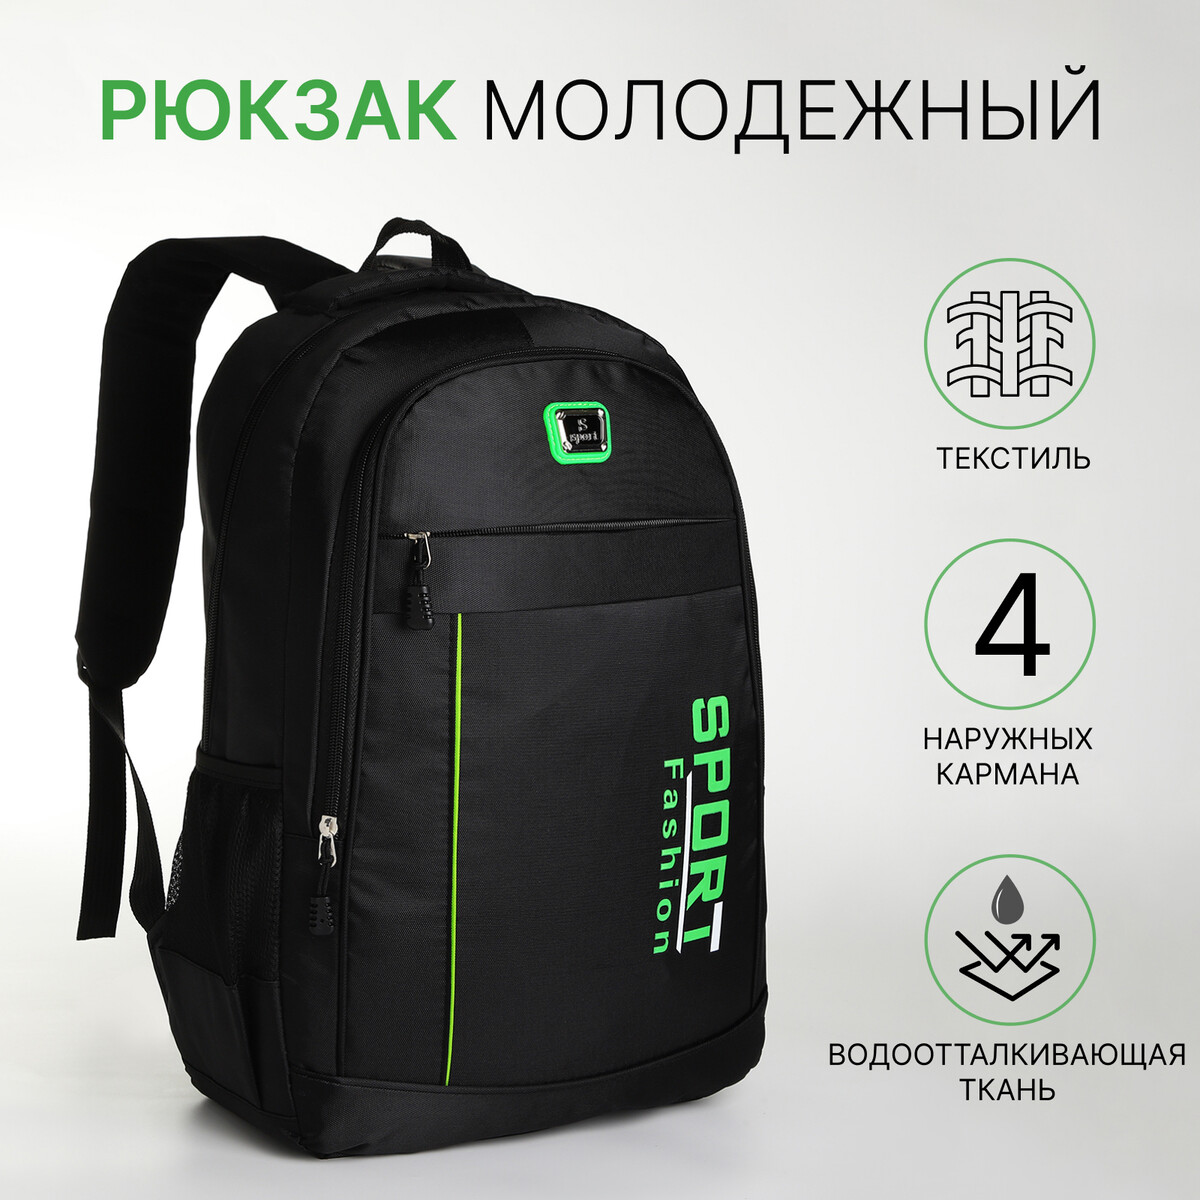 Рюкзак молодежный на молнии, 4 кармана, цвет черный/зеленый рюкзак школьный из текстиля на молнии 3 кармана зеленый